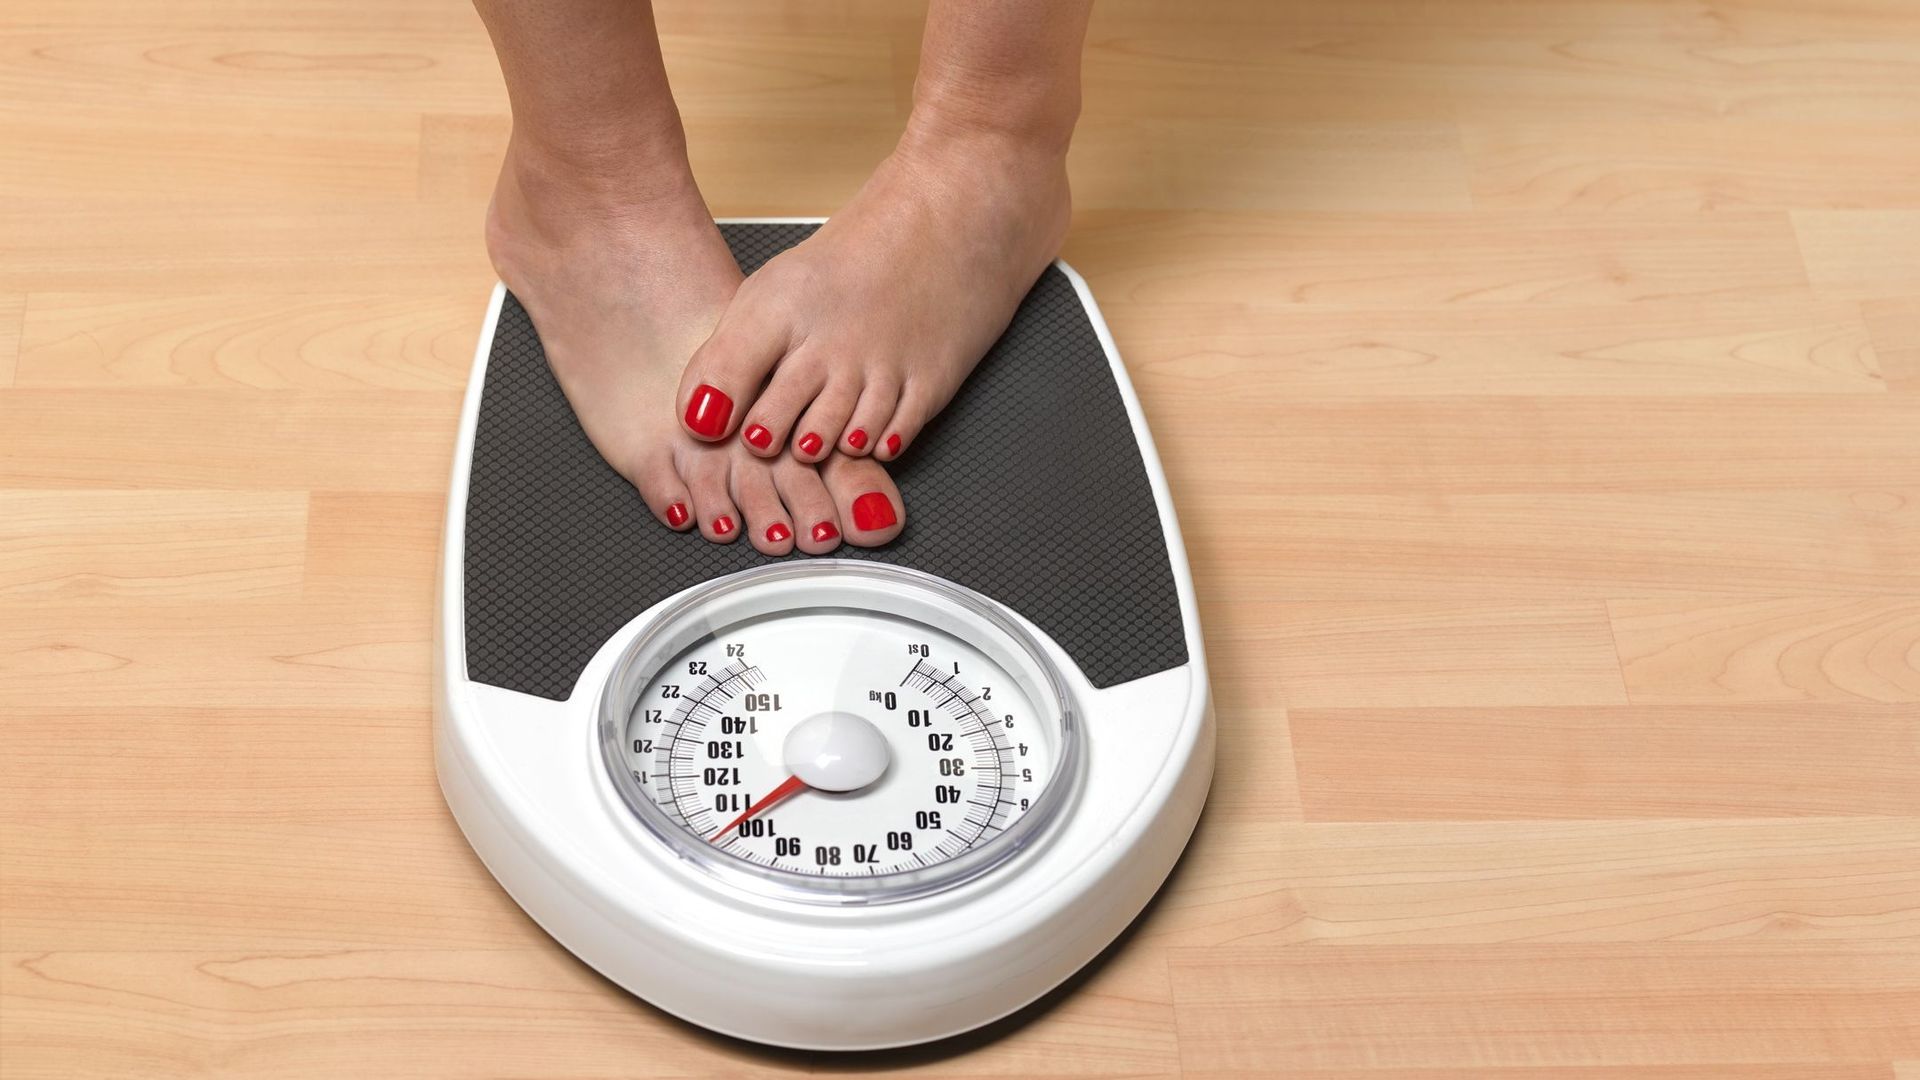 Les individus obèses seraient six fois plus susceptibles de devenir diabétiques.